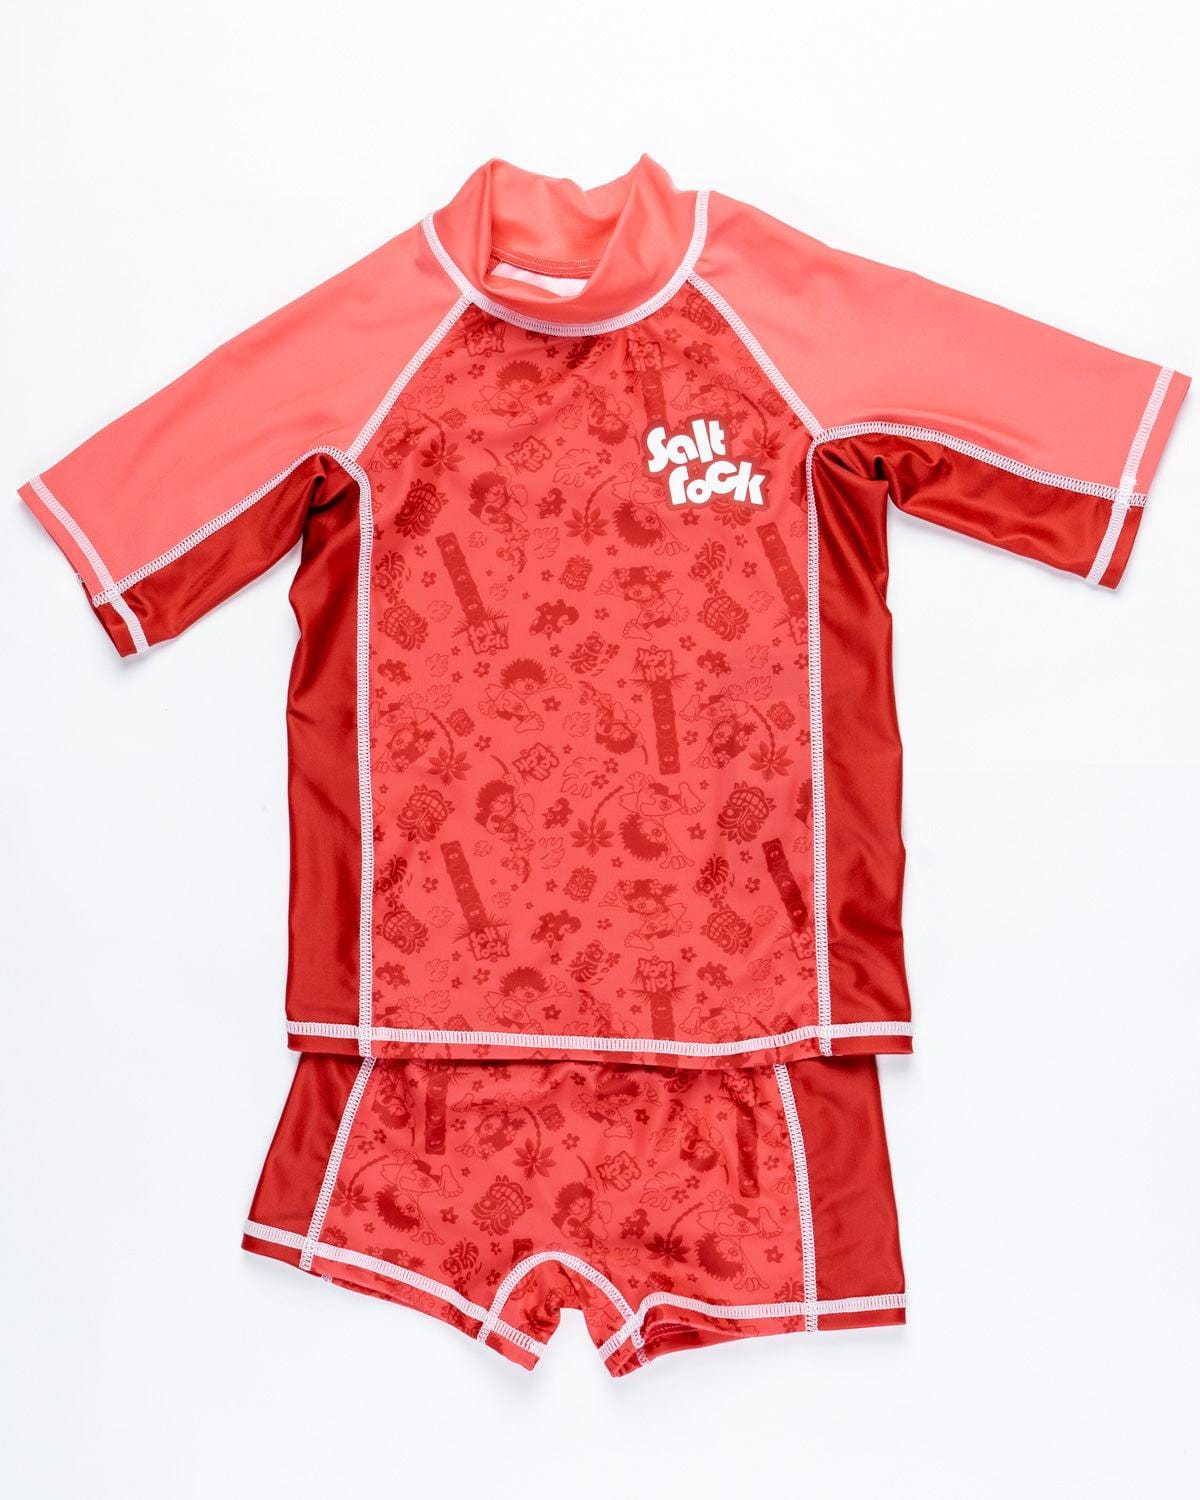 Tiki Tok - Kids Swim Set - Red, Red / 2-3 Years